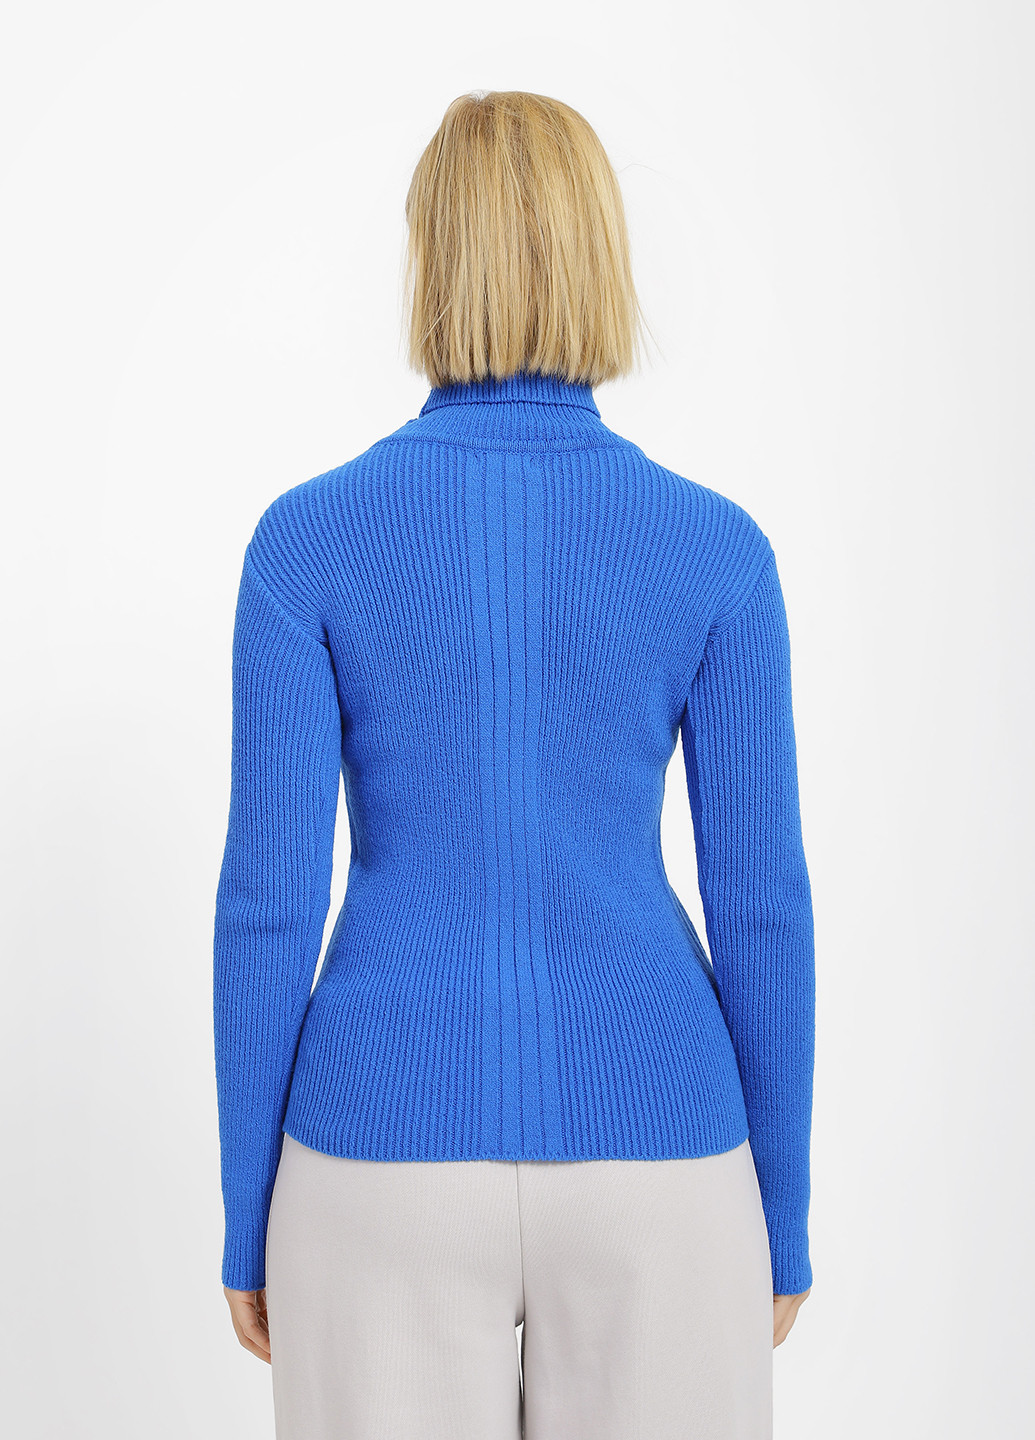 Синий зимний свитер Sewel